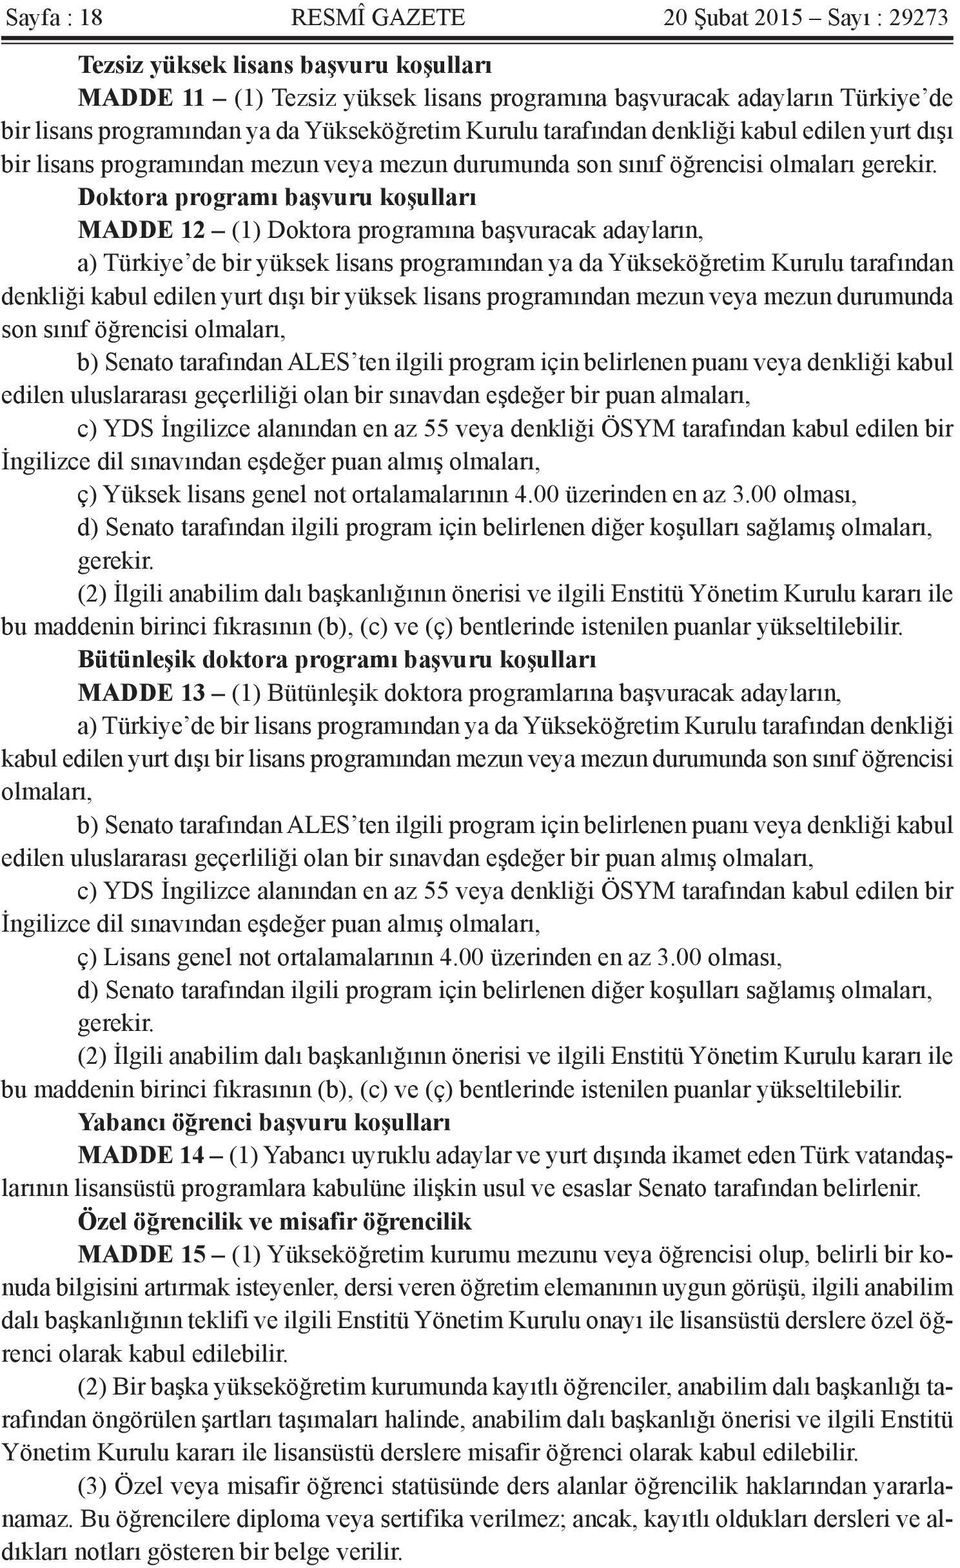 Doktora programı başvuru koşulları MADDE 12 (1) Doktora programına başvuracak adayların, a) Türkiye de bir yüksek lisans programından ya da Yükseköğretim Kurulu tarafından denkliği kabul edilen yurt